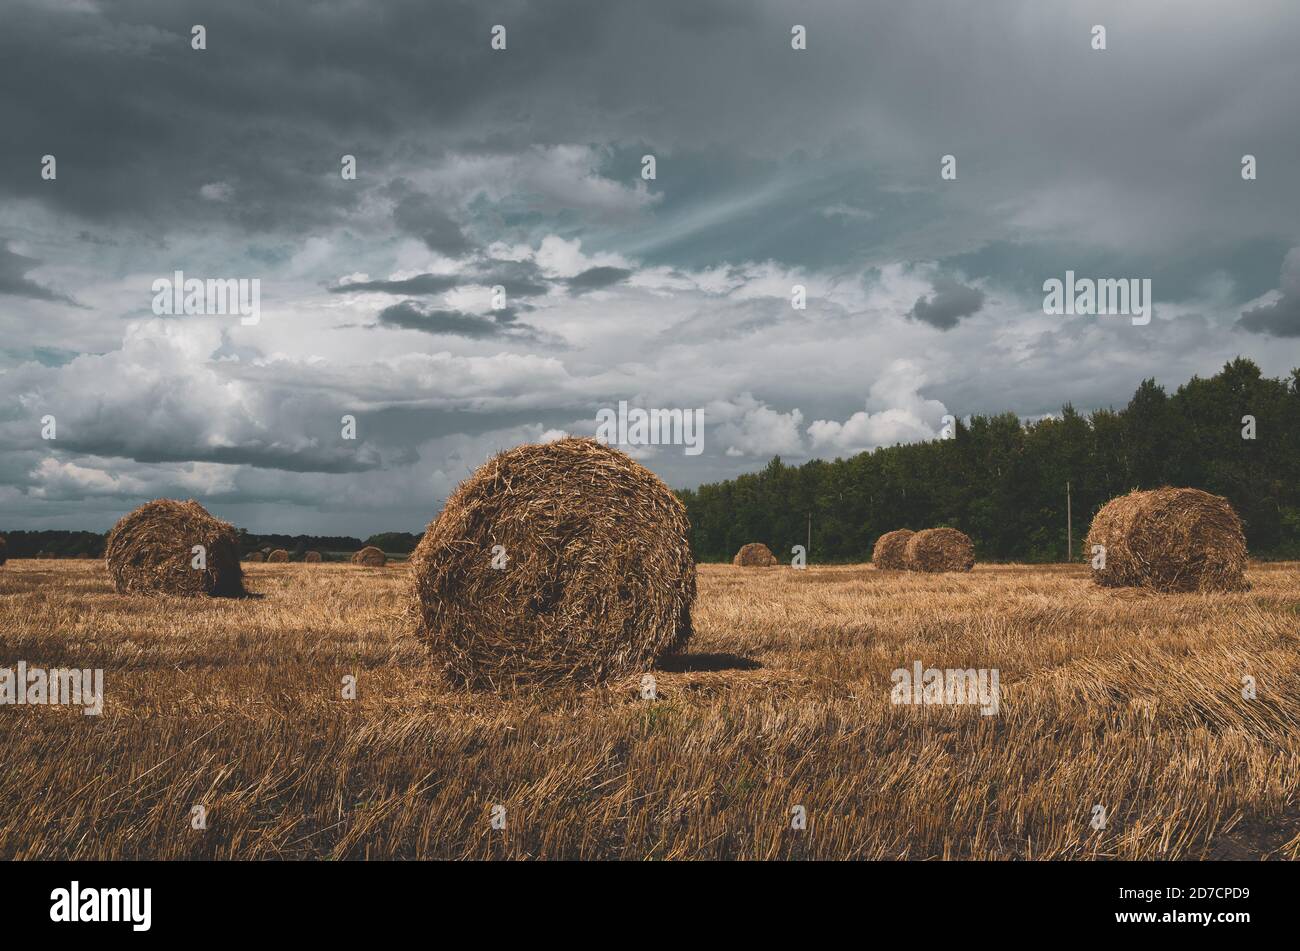 Nuages sombres de tempête sur le champ de la ferme avec des botte de foin. Banque D'Images